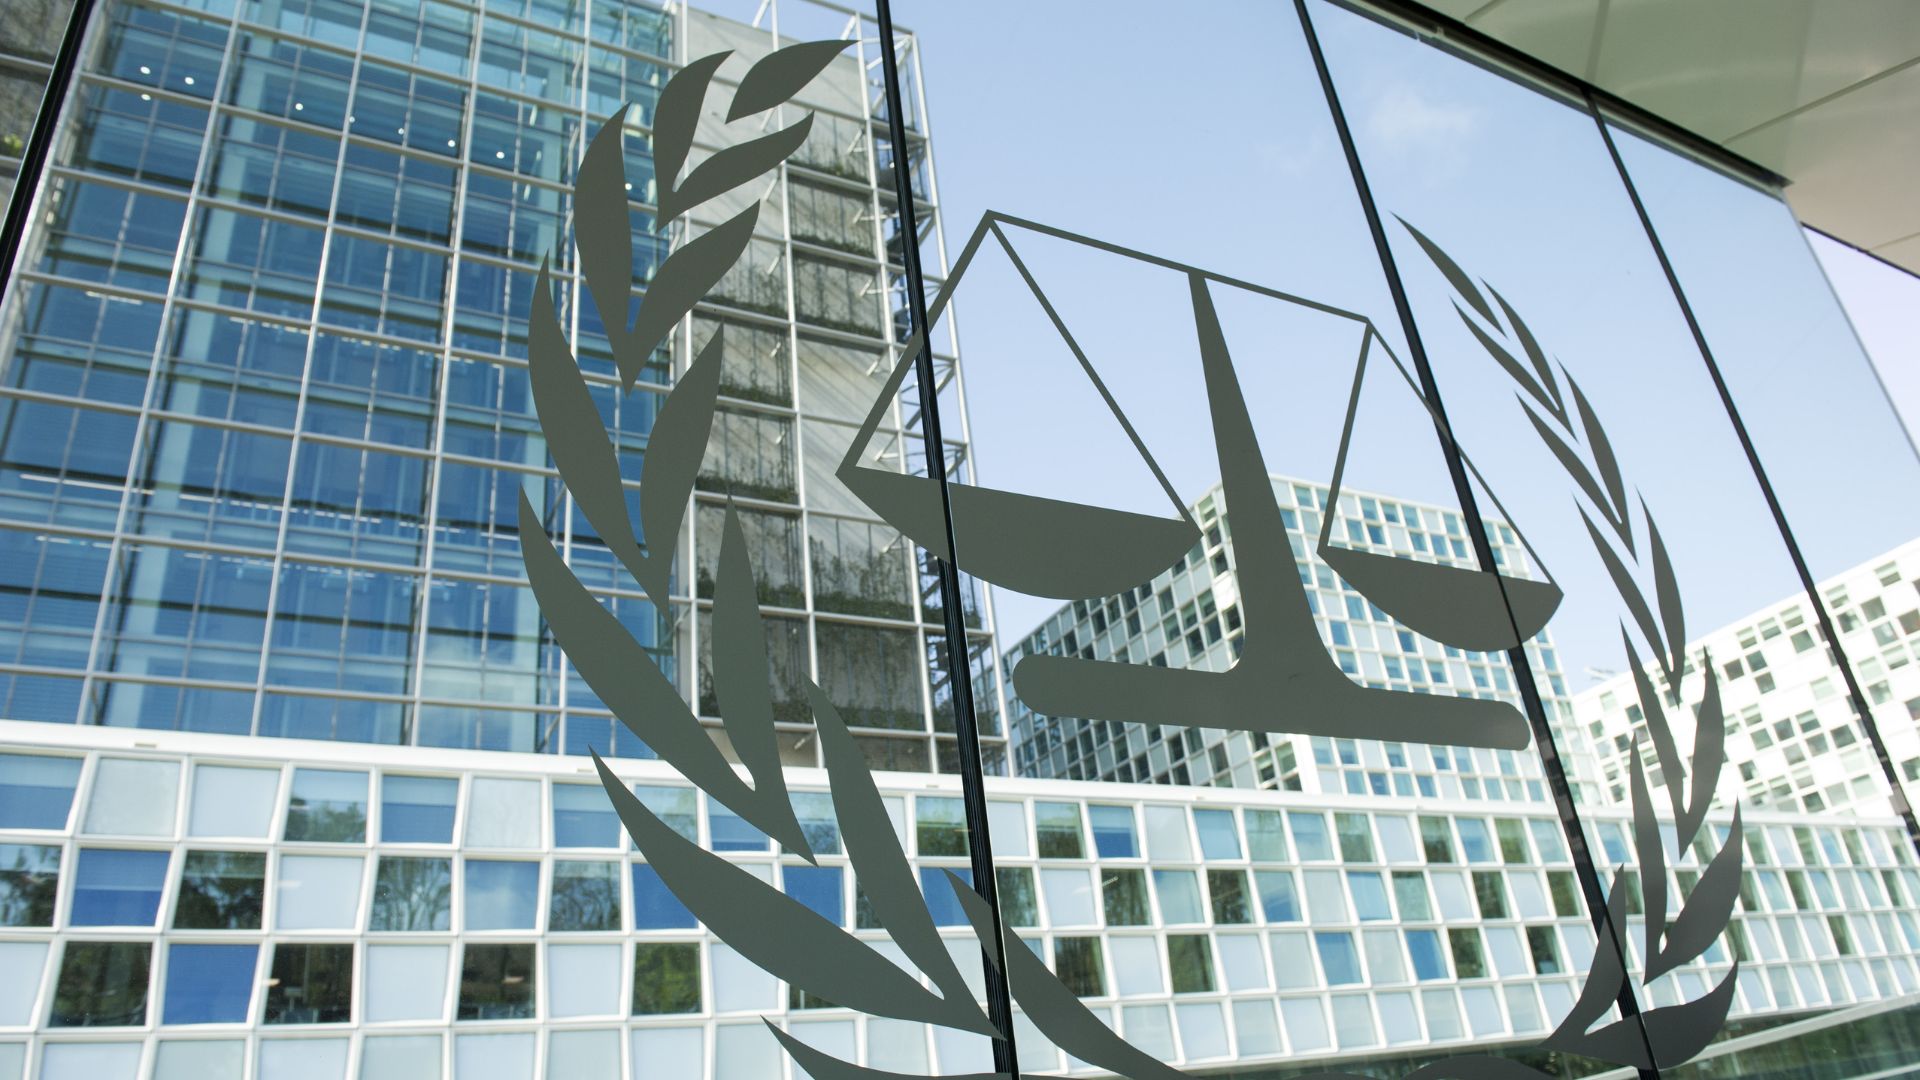 US Lawmakers Consider Sanctions Against ICC Over Netanyahu Arrest Warrant